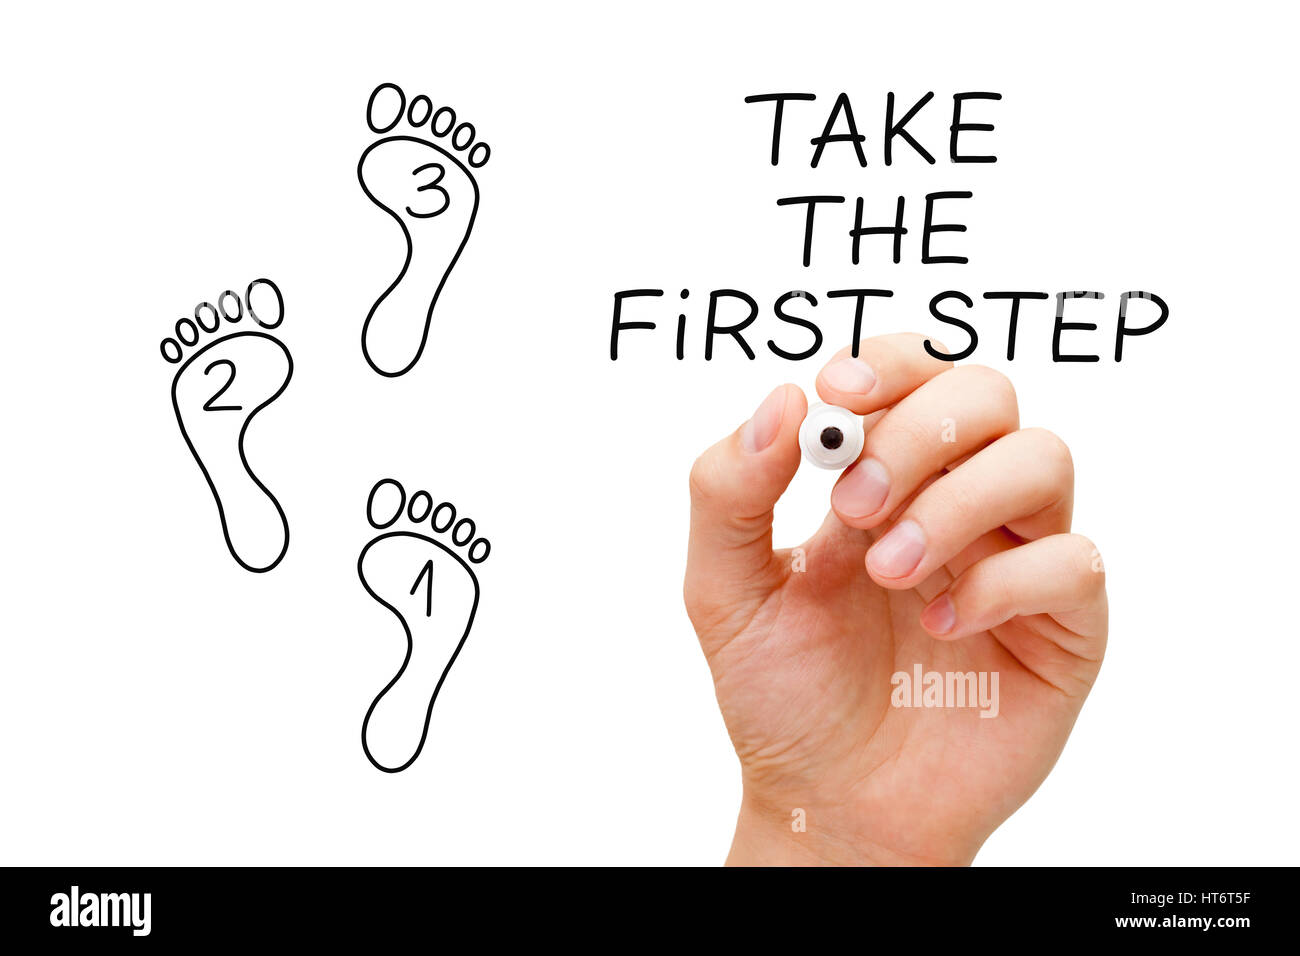 Handzeichnung Taking The First Step Konzept mit Filzstift auf transparentem Glas. Stockfoto